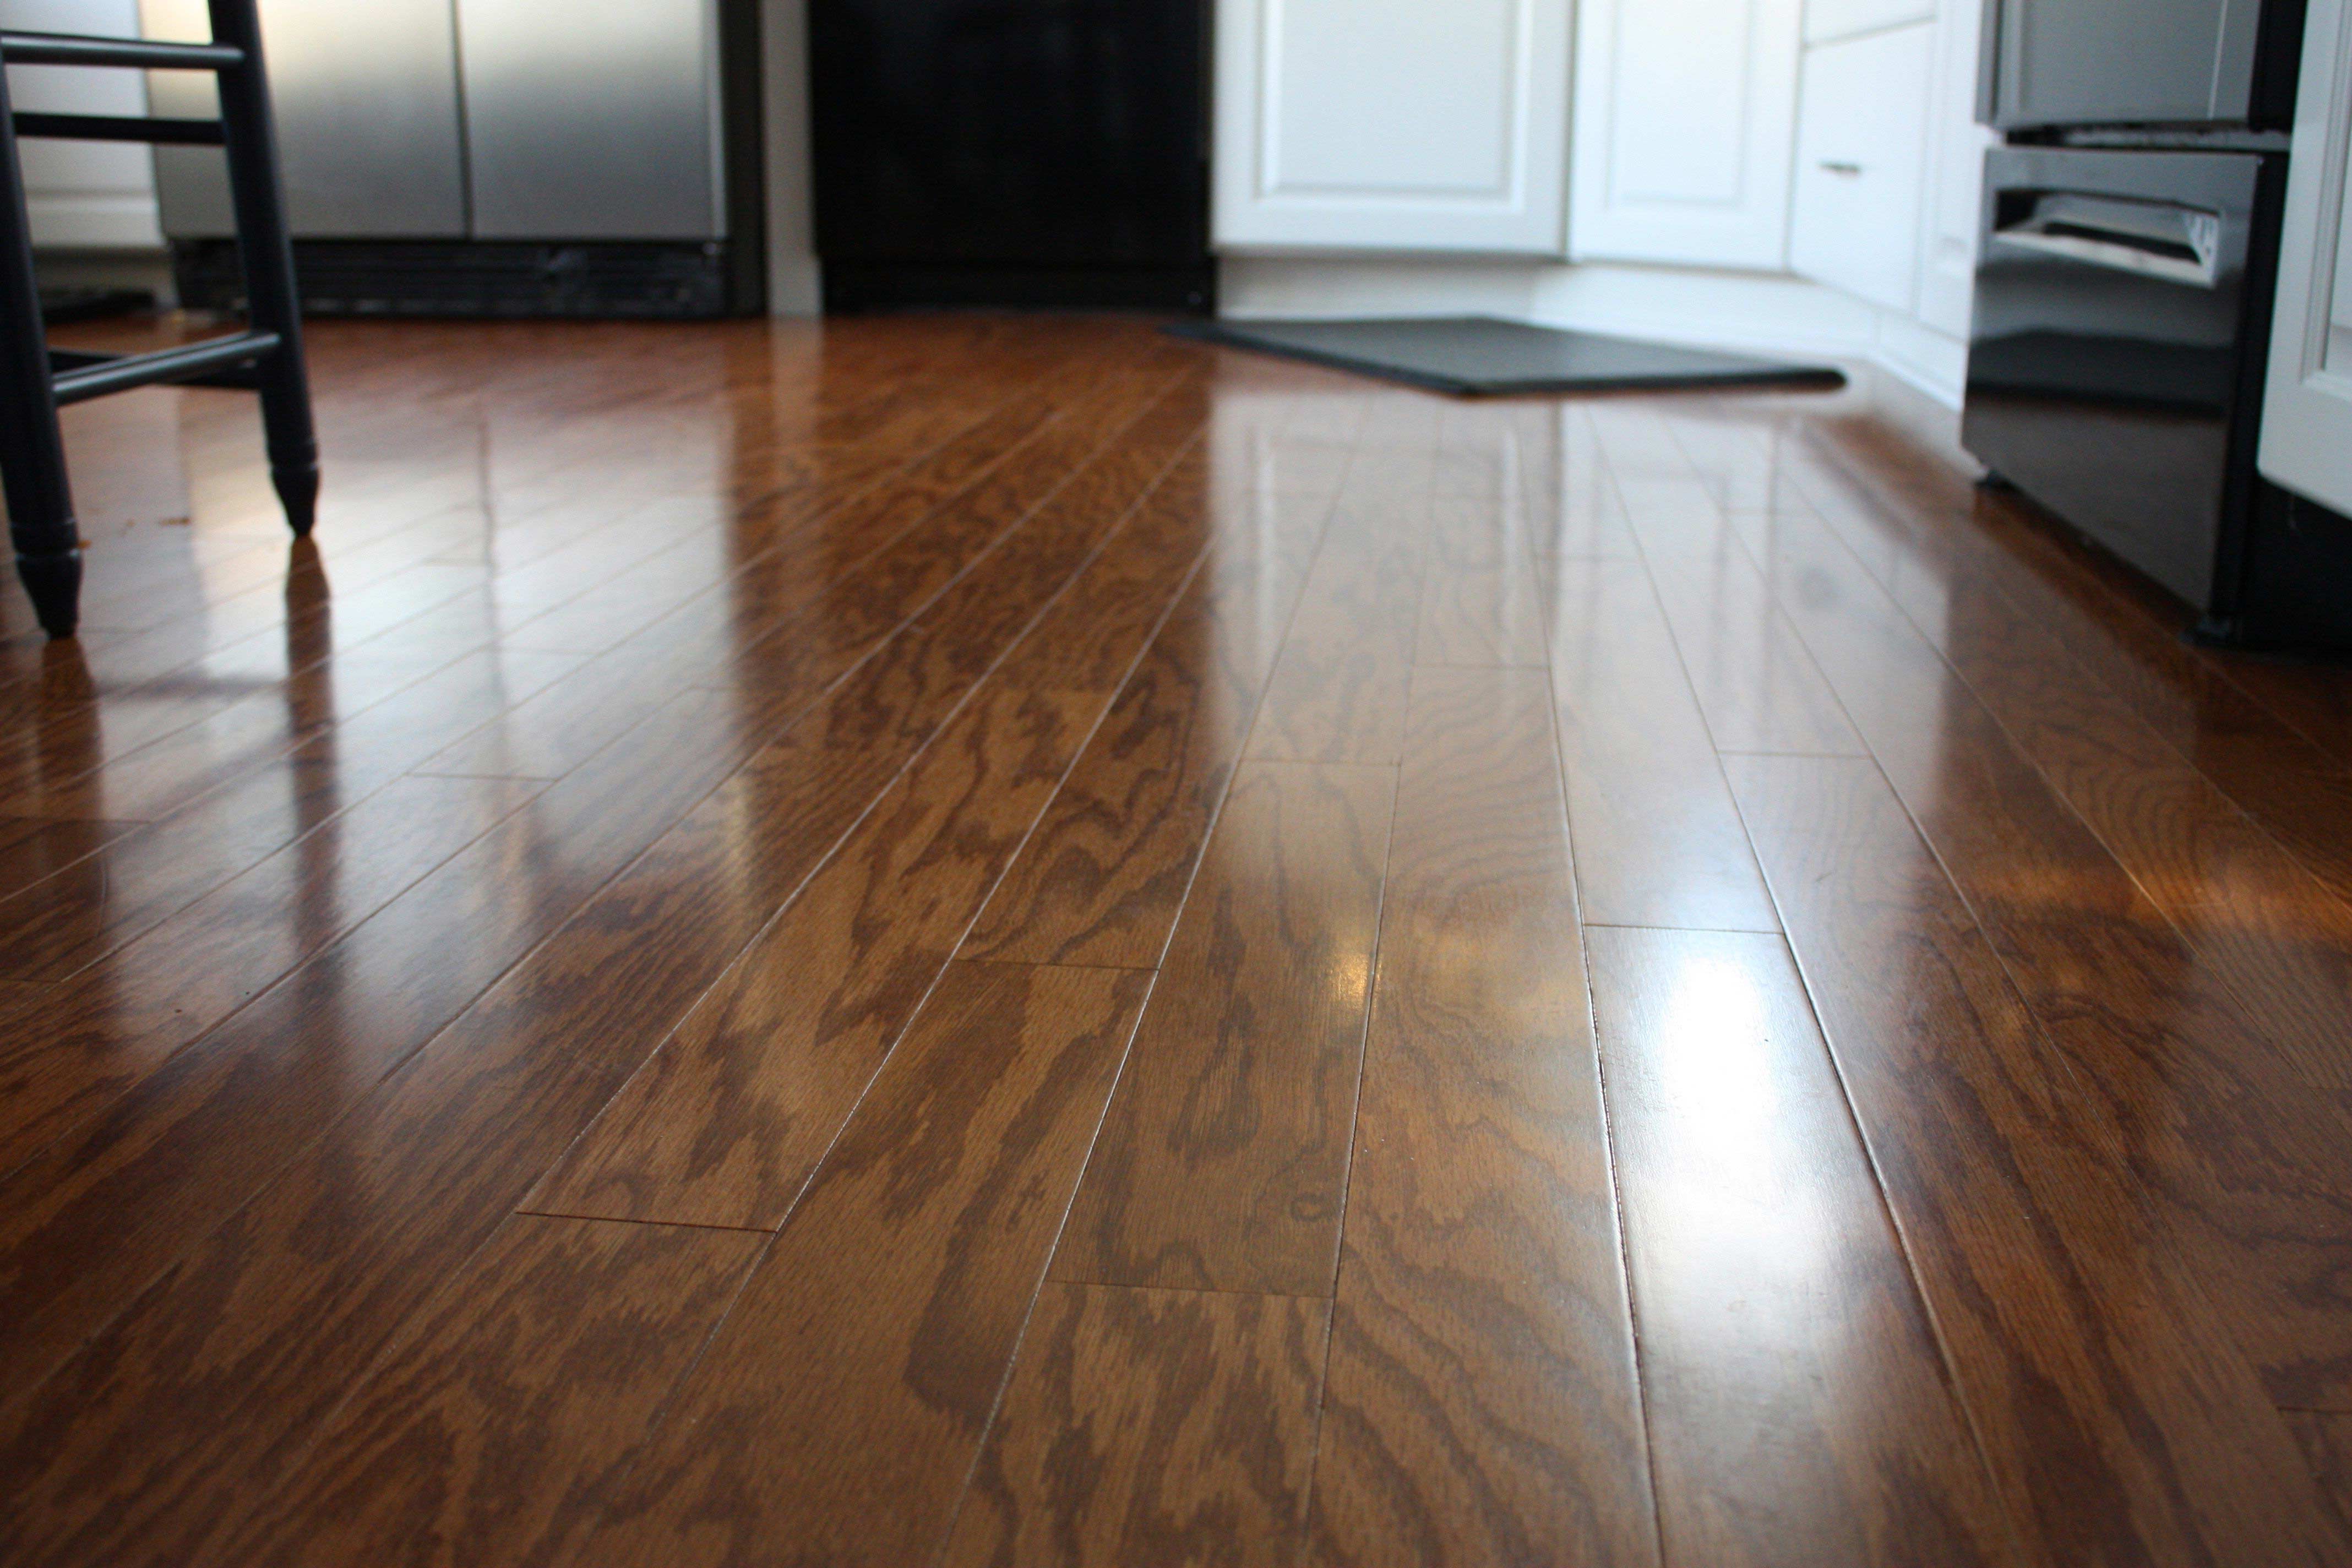 Cleaning Engineered Hardwood Floors Tips In Easiest Way